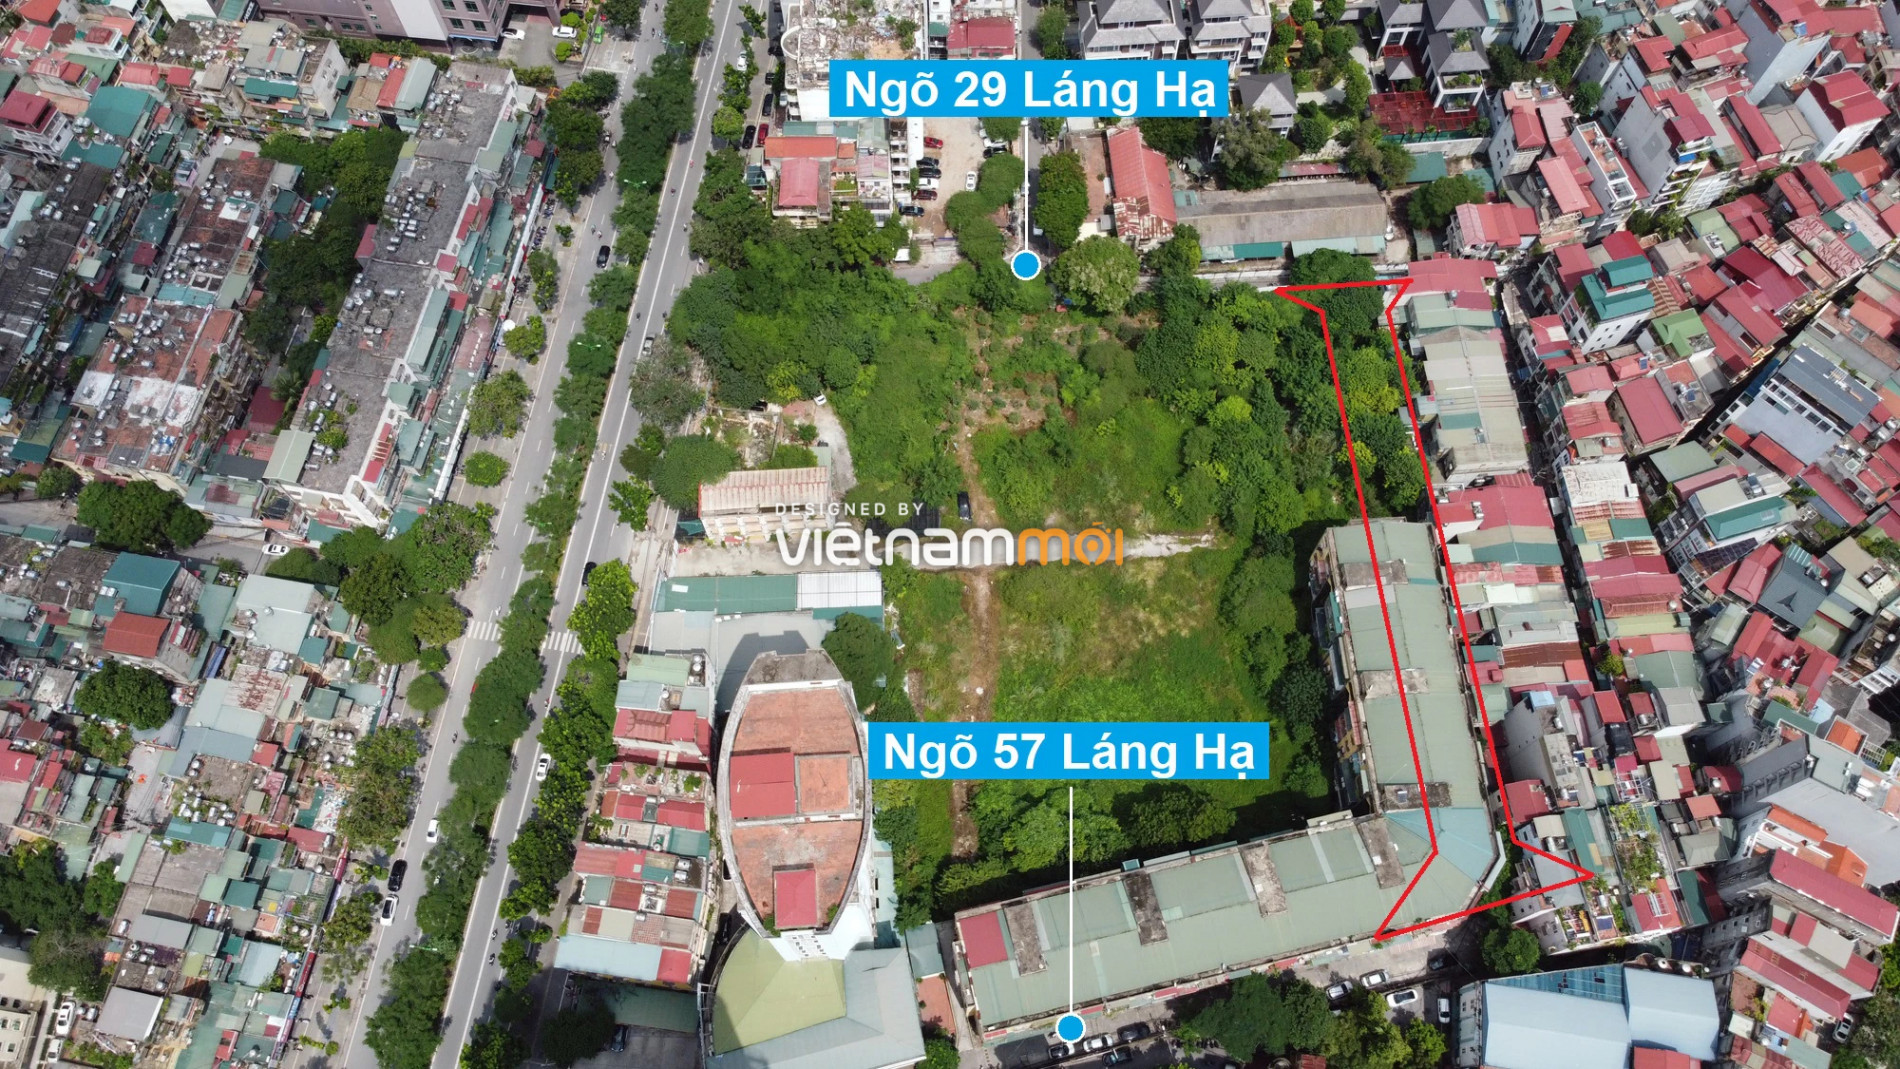 Những khu đất sắp thu hồi để mở đường ở quận Đống Đa, Hà Nội (phần 3) - Ảnh 17.